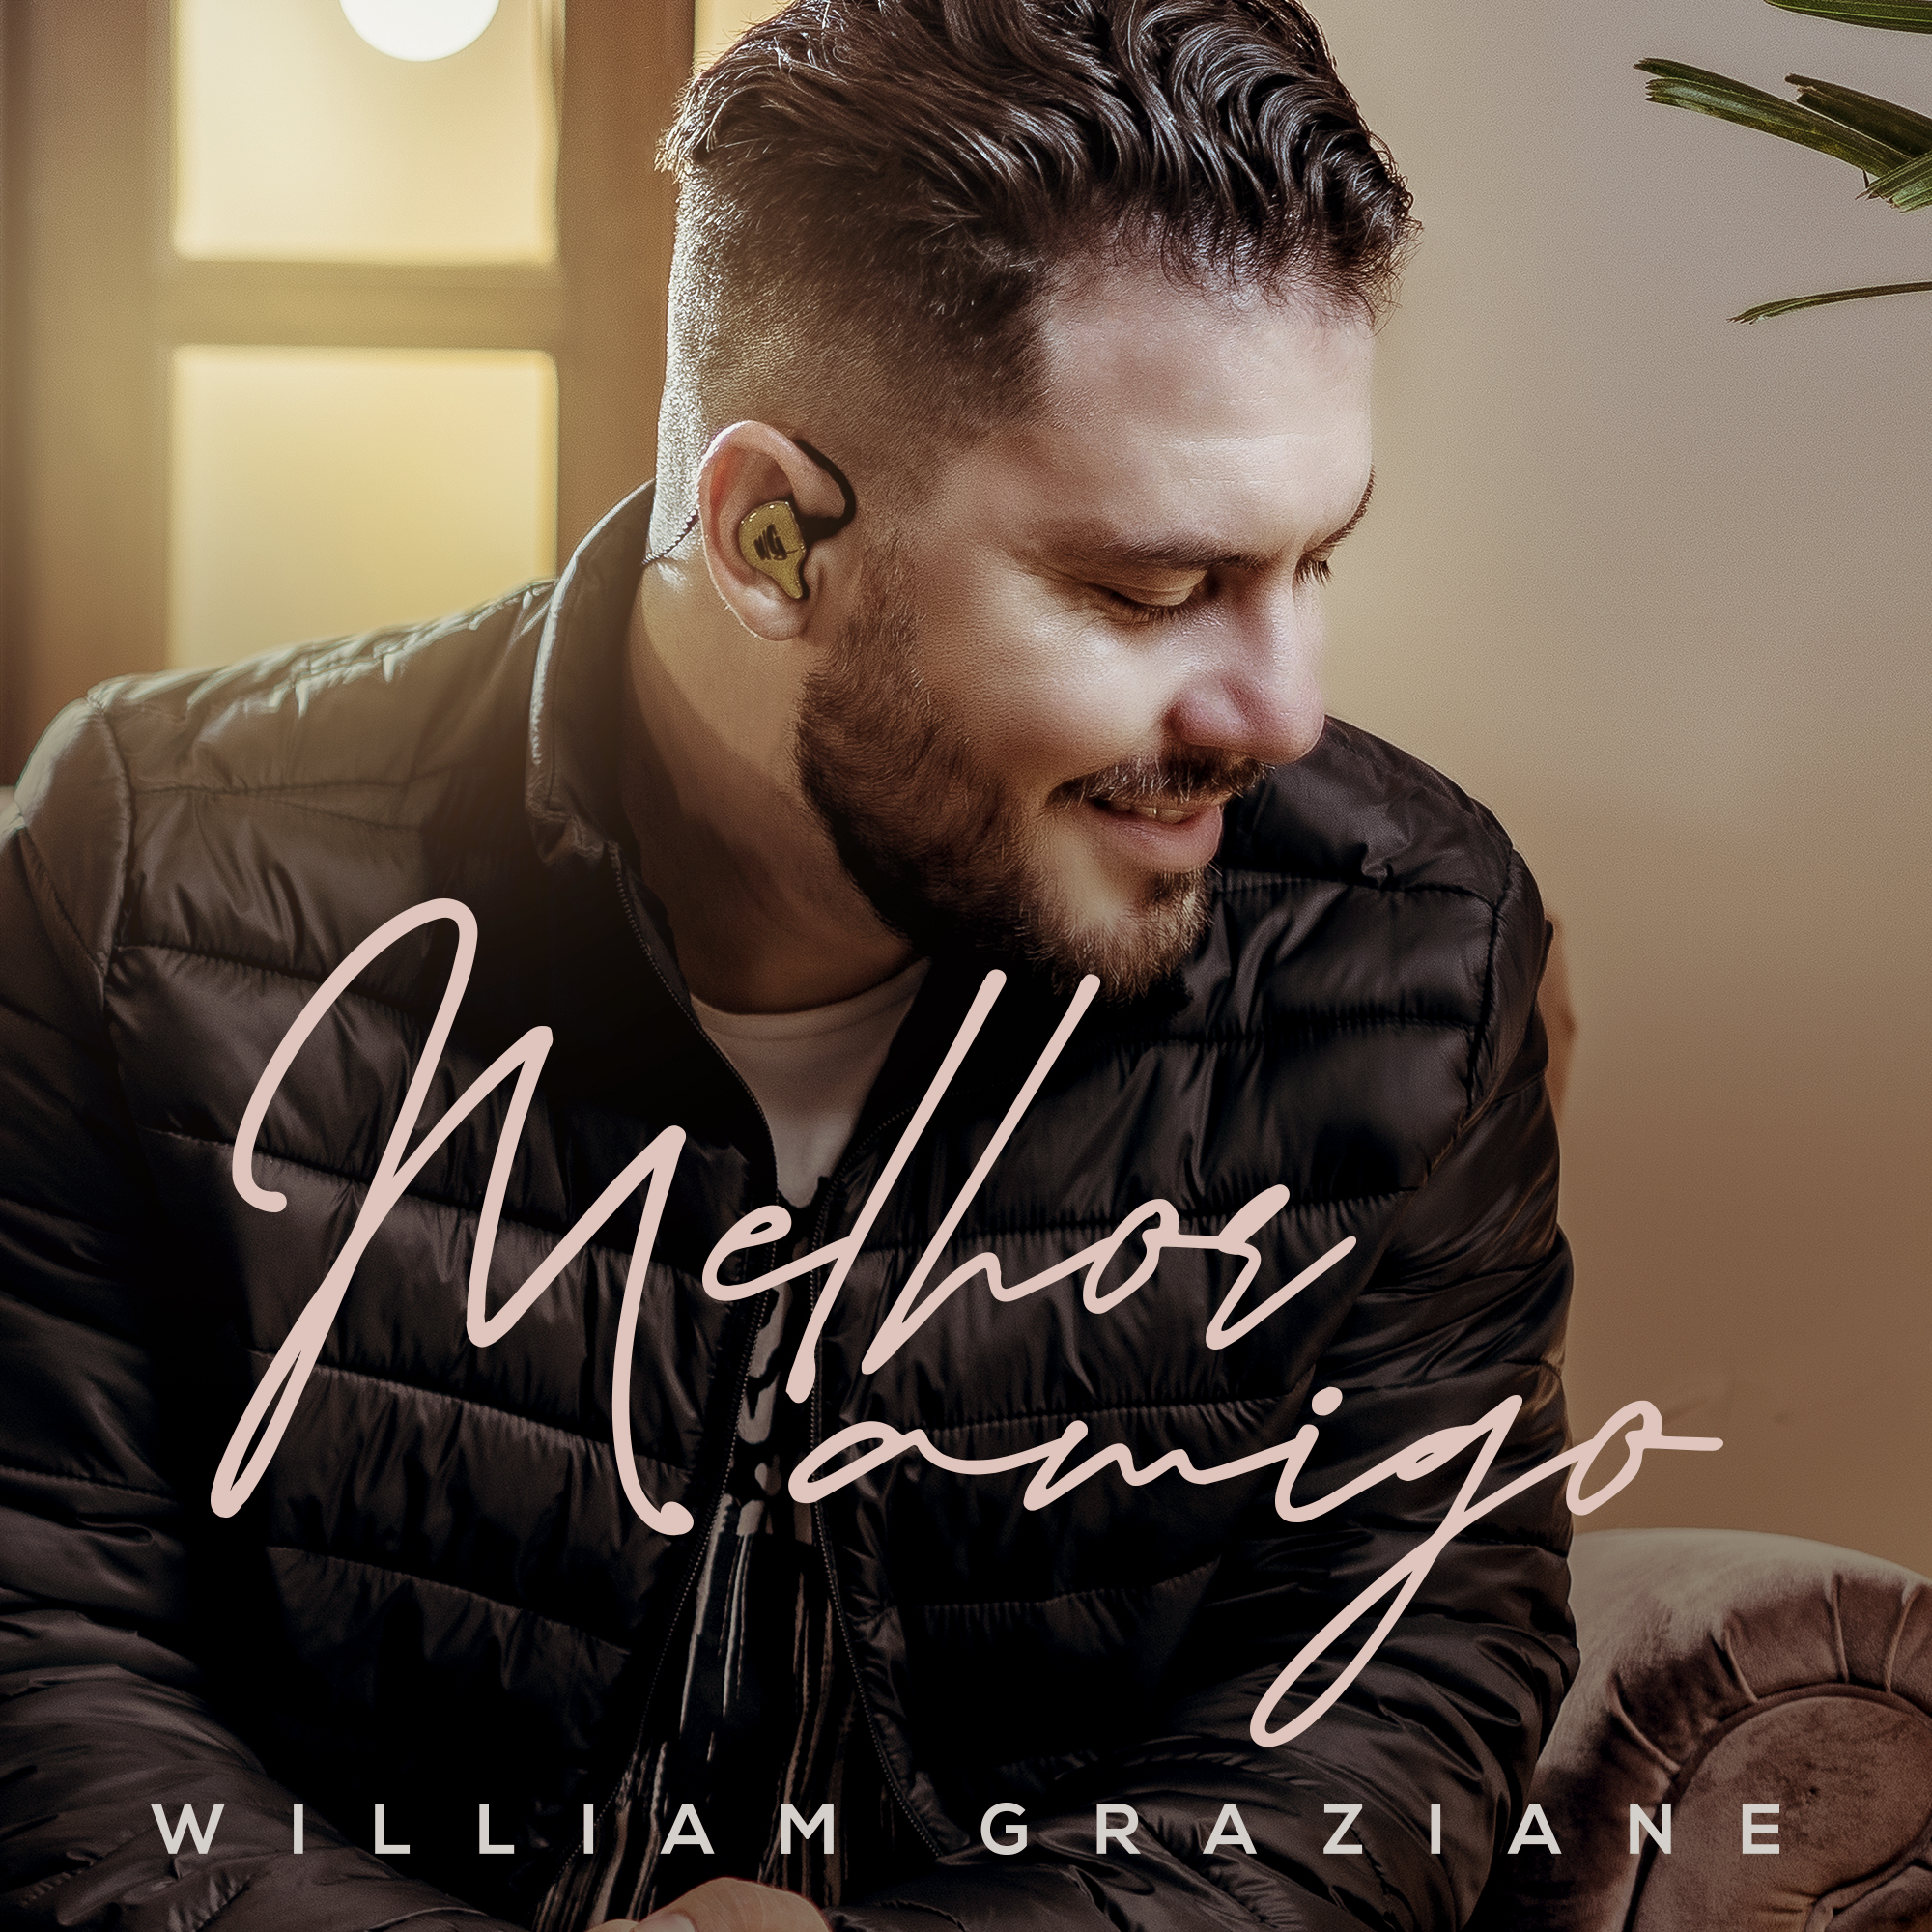 William Graziane lança seu novo single “Melhor Amigo” pela Sony Music